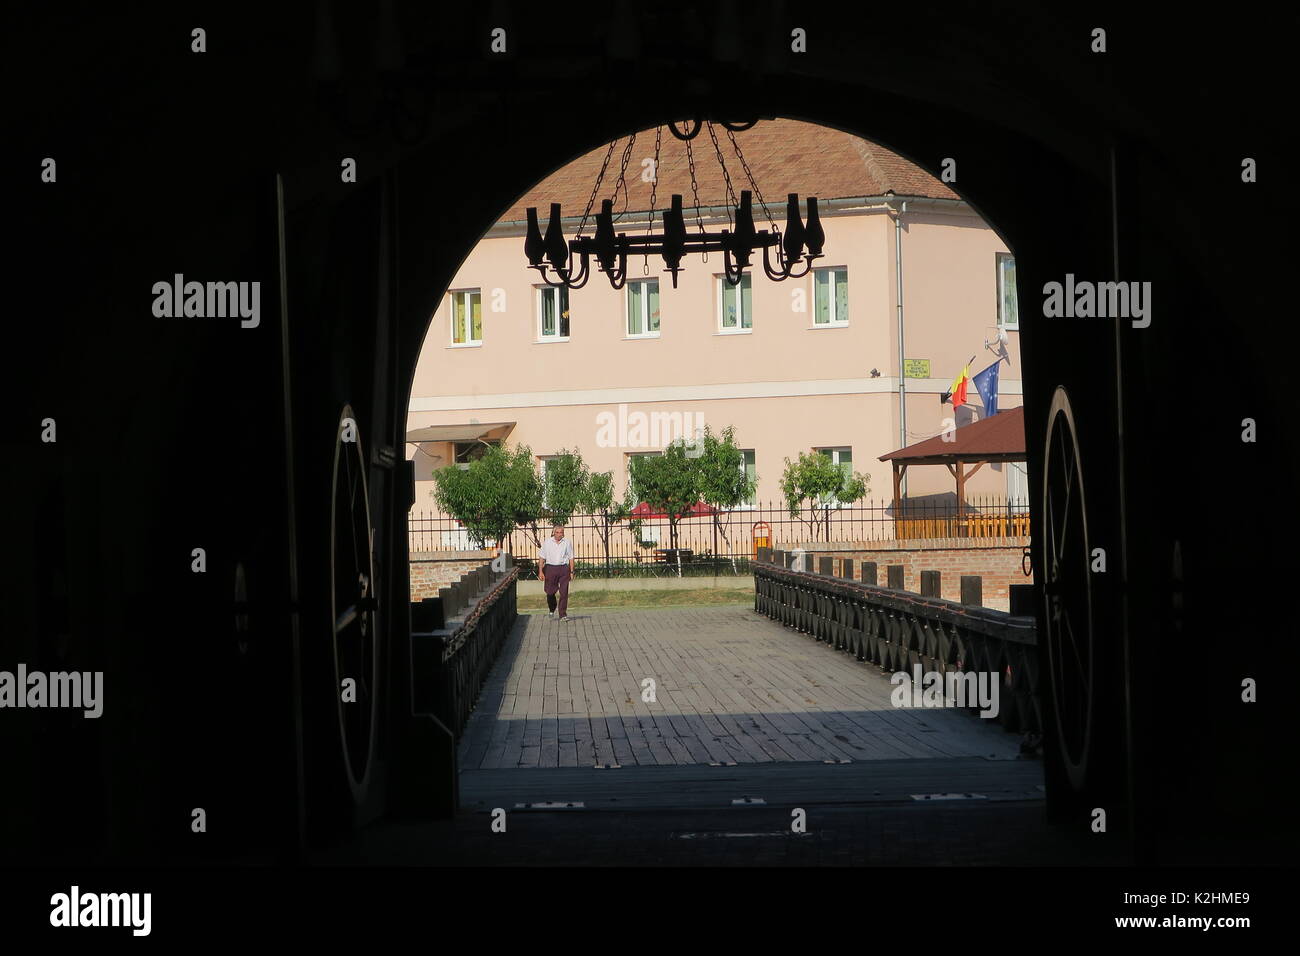 Historischer zugbrücke am gatealley Eingang zum malerischen Stadt Alba Iulia, Rumänien. Stockfoto